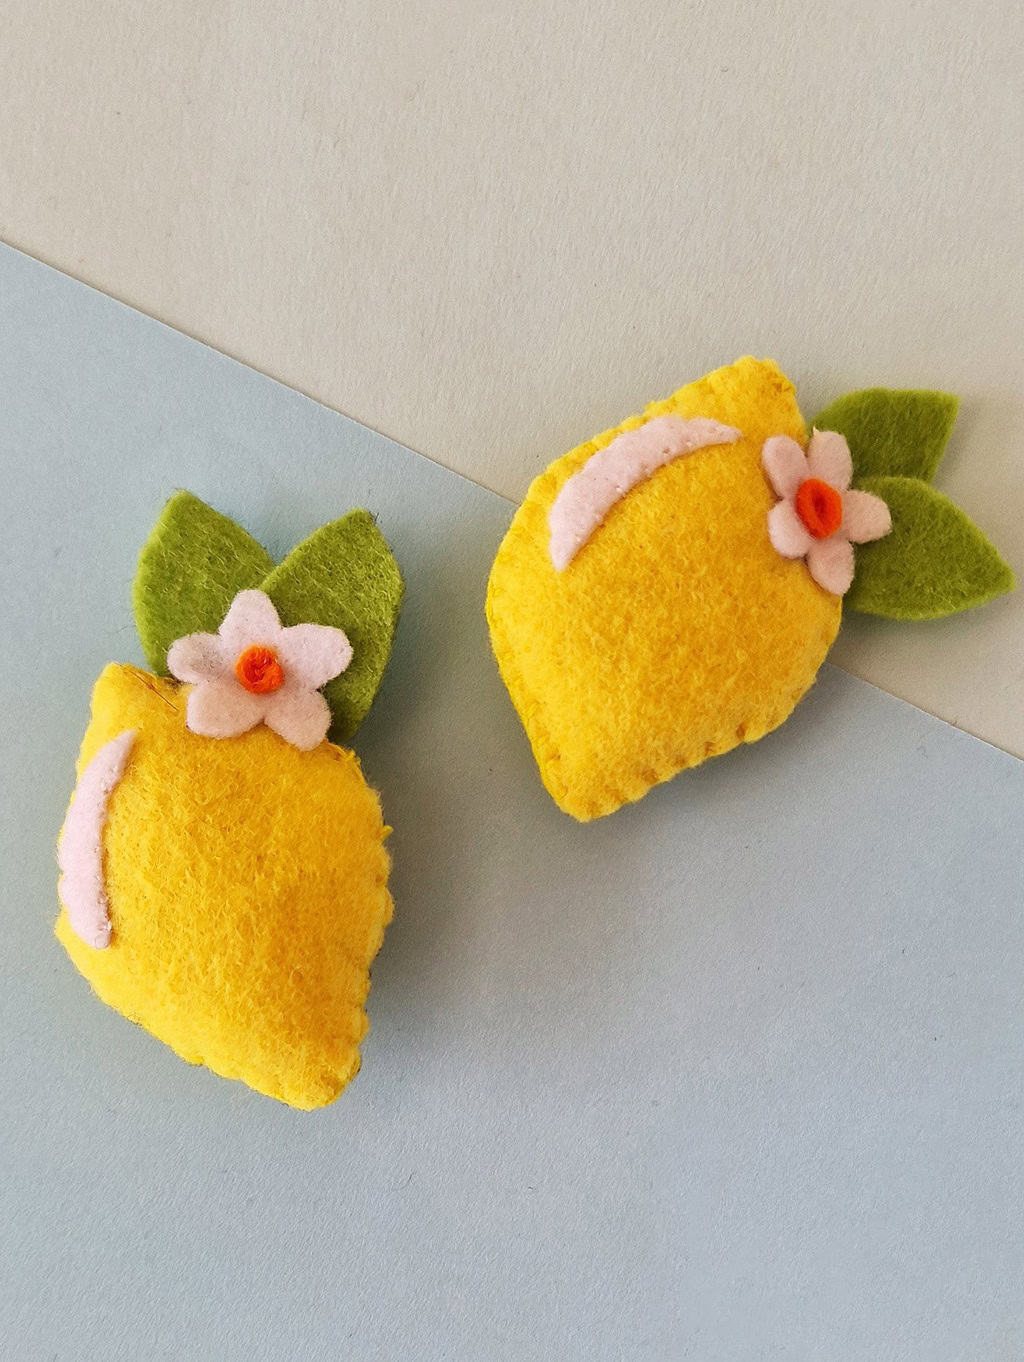 DIY Felt Lemon Craft